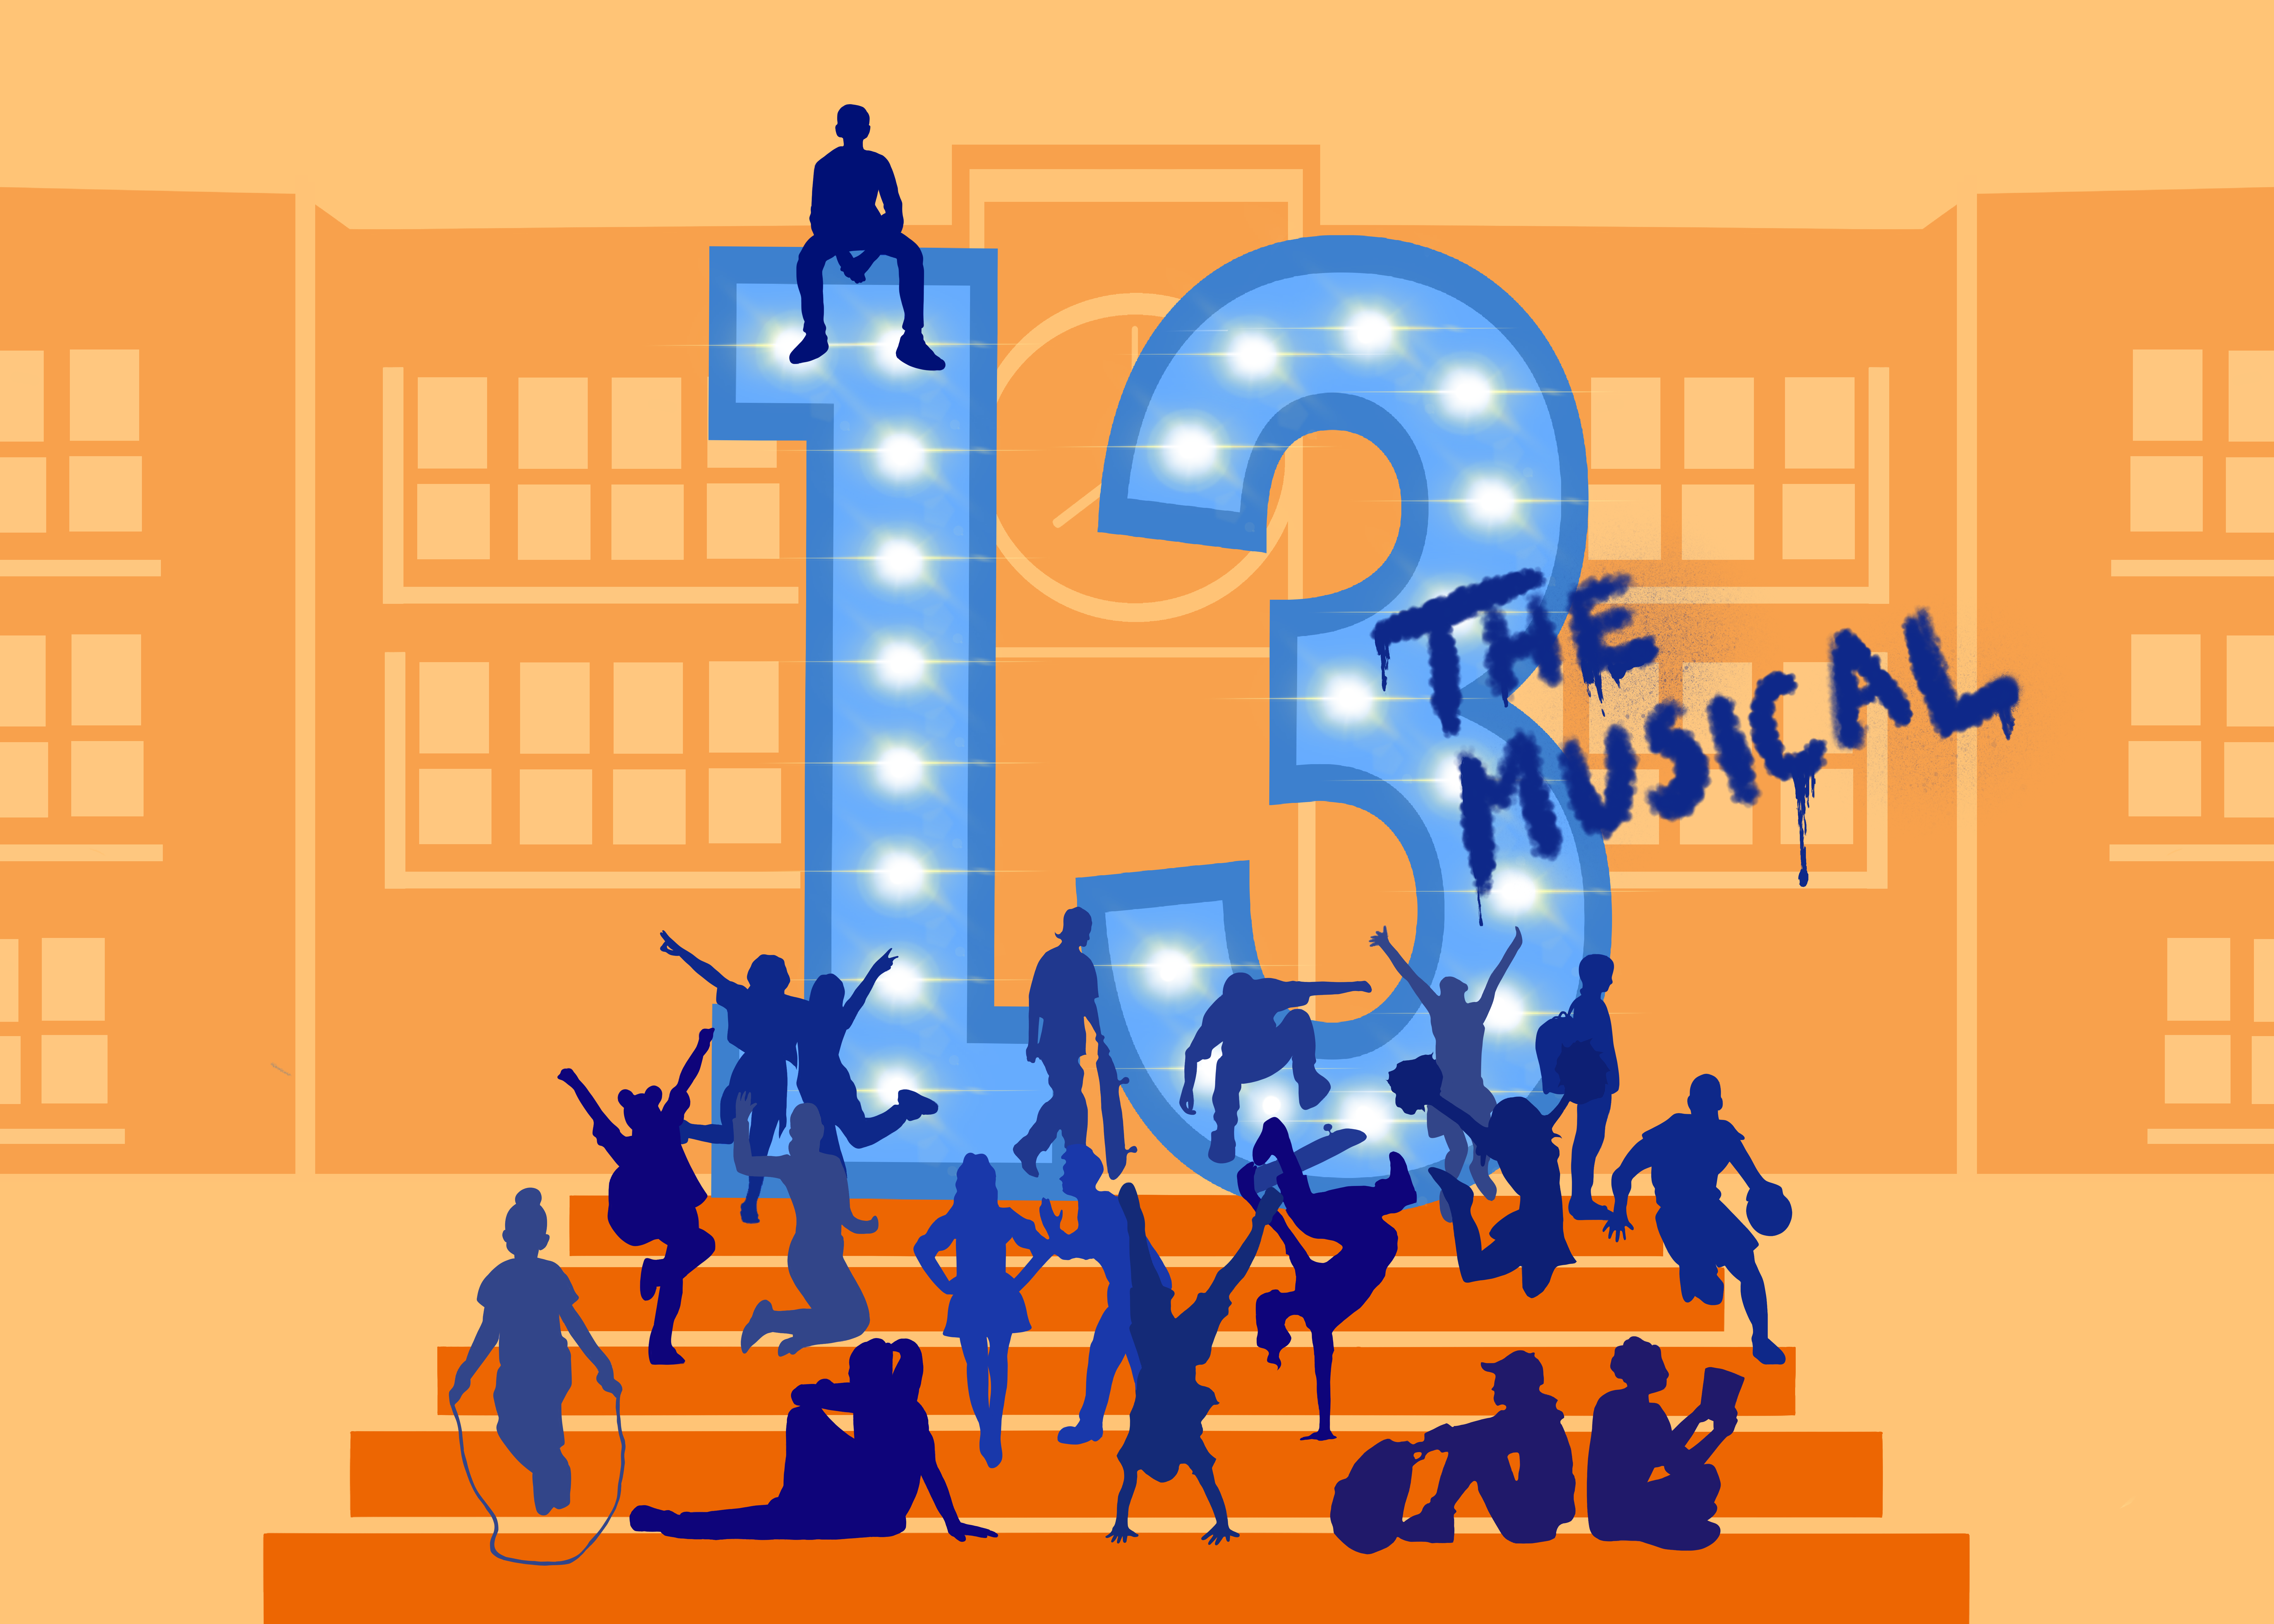 Ein Cartoonbild mit einer Vielzahl von Kindern, die auf einer orangefarbenen Treppe stehen, sitzen, Seil springen und mehr. Dreizehn sind in großen Zahlen gedruckt, und darauf ist "das Musical" gekritzelt. Im Hintergrund ist ein großes schulähnliches Gebäude zu sehen.